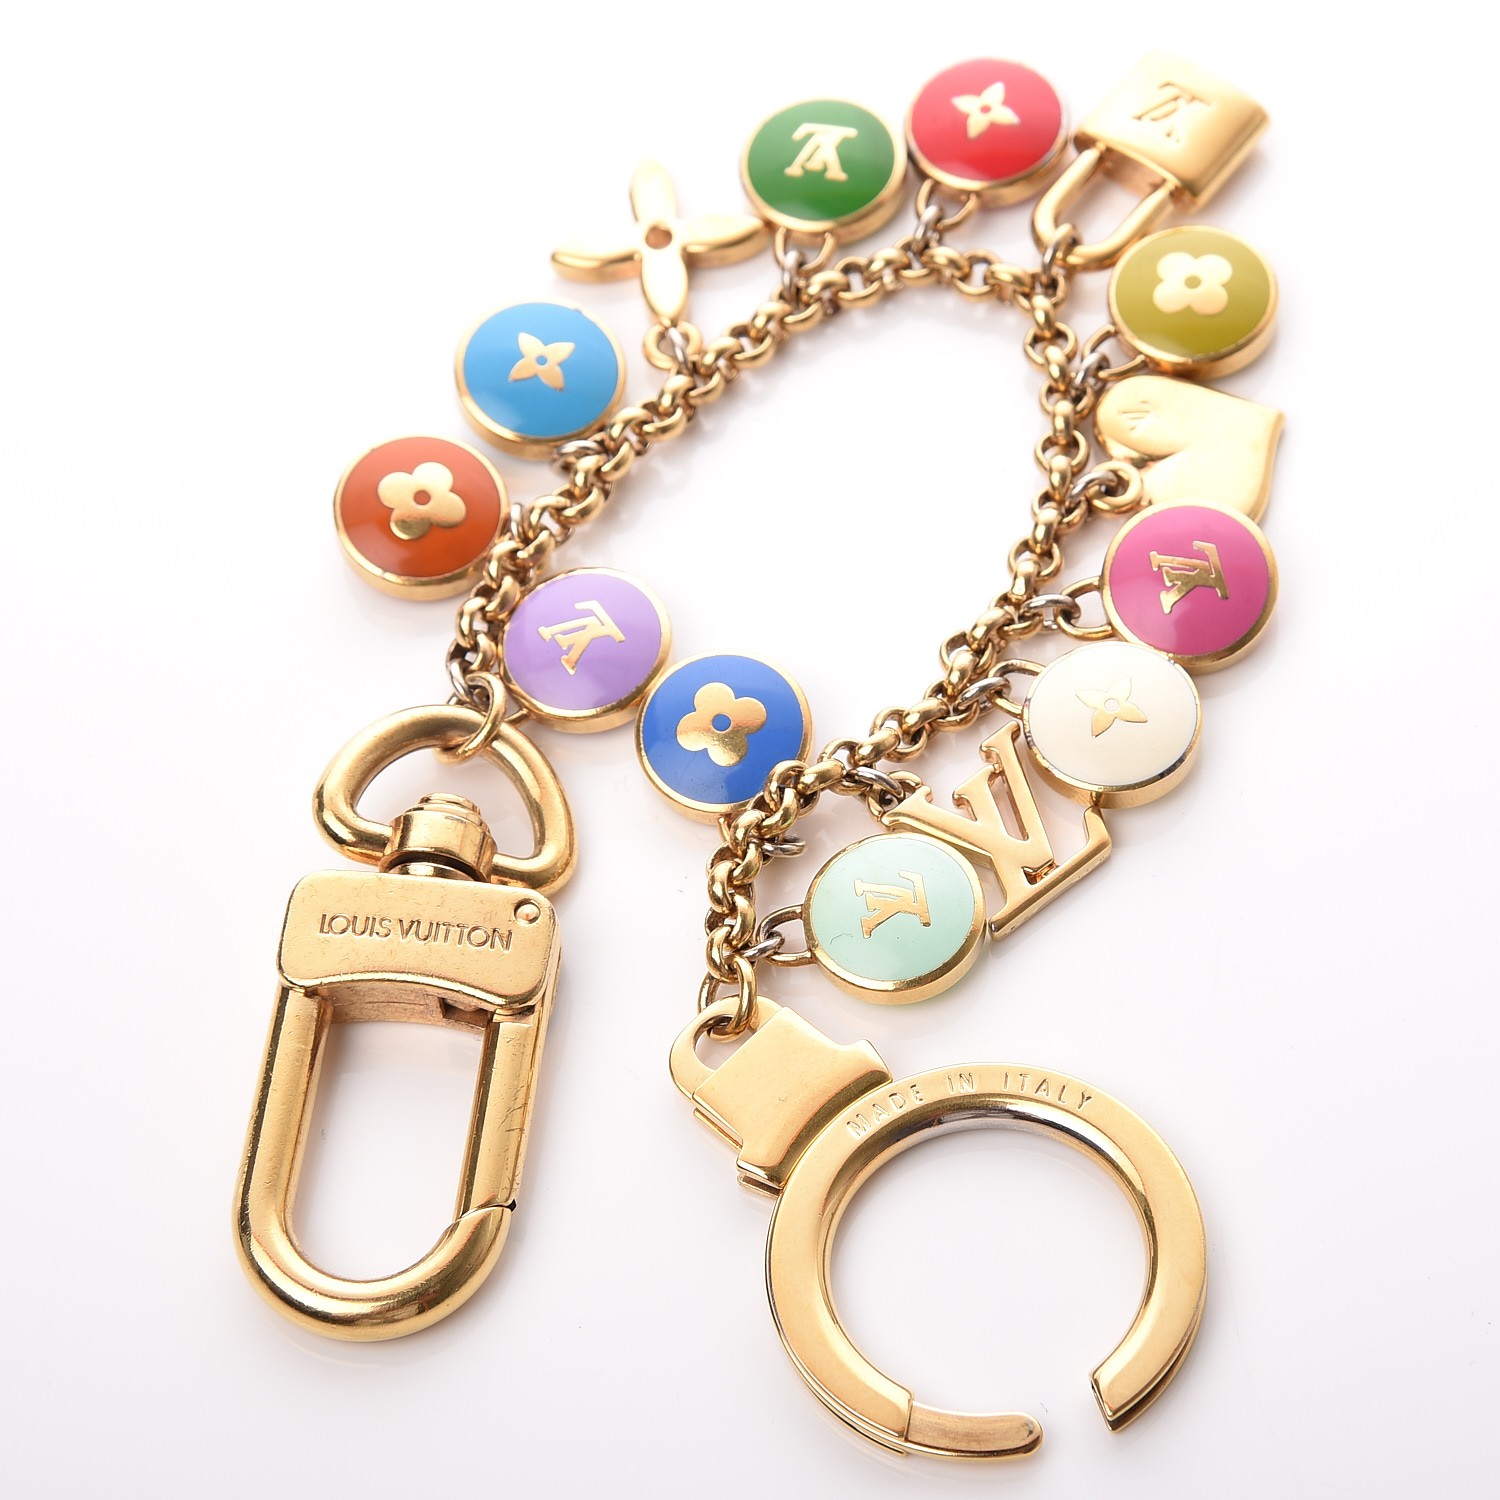 LOUIS VUITTON Pastilles Key Chain Bag Charm Multicolor 253496